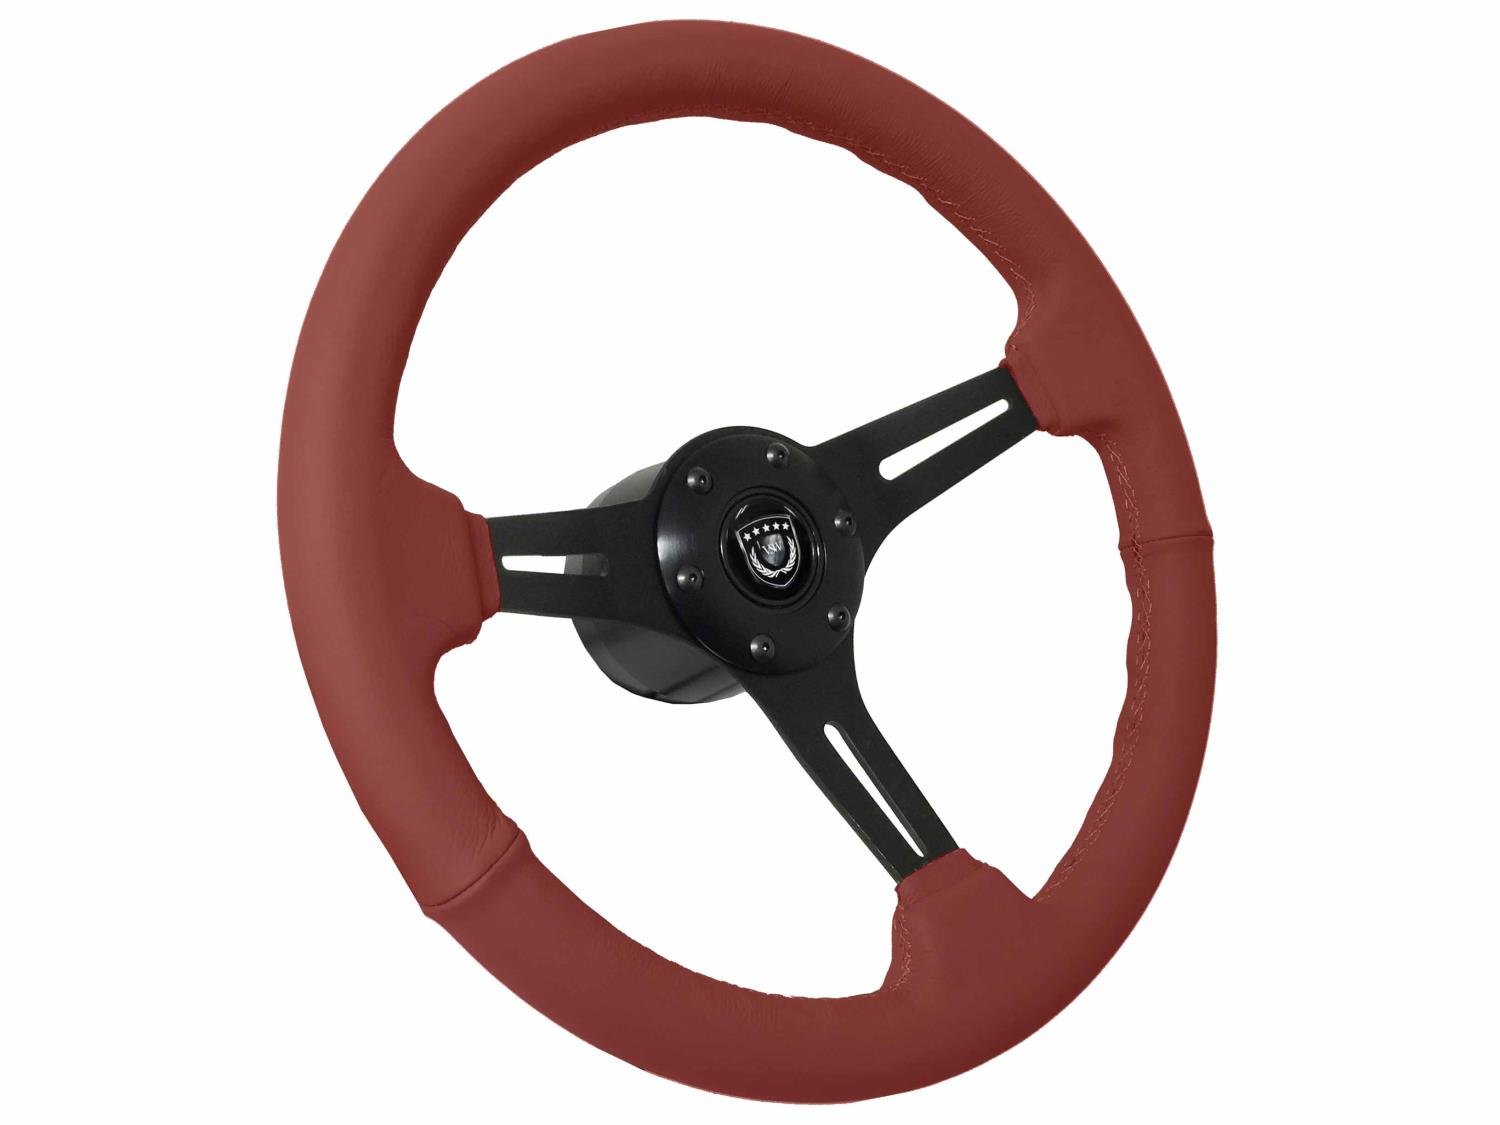 S6 Sport Steering Wheel, 14 in. Diameter, Premium Red Leather Grip